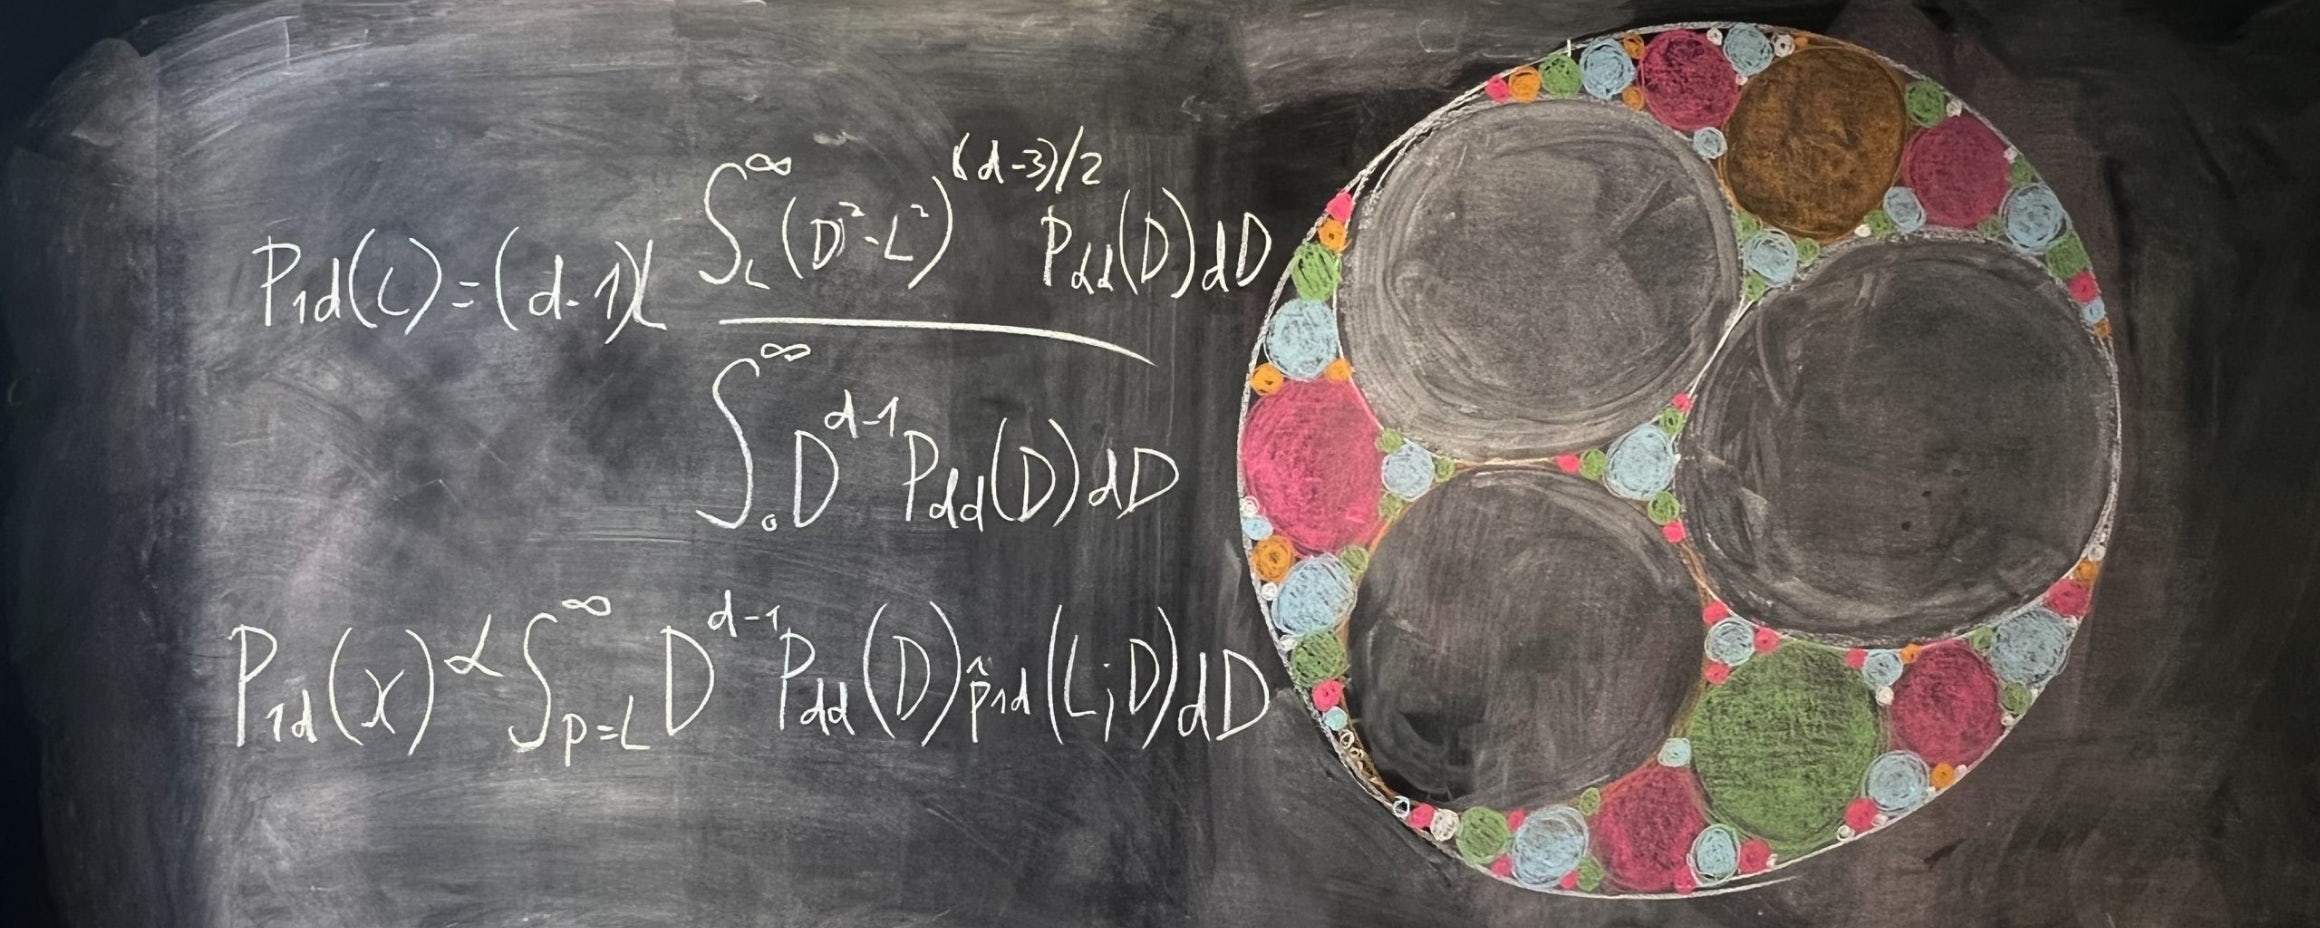 Blackboard - Ever-shrinking spheres